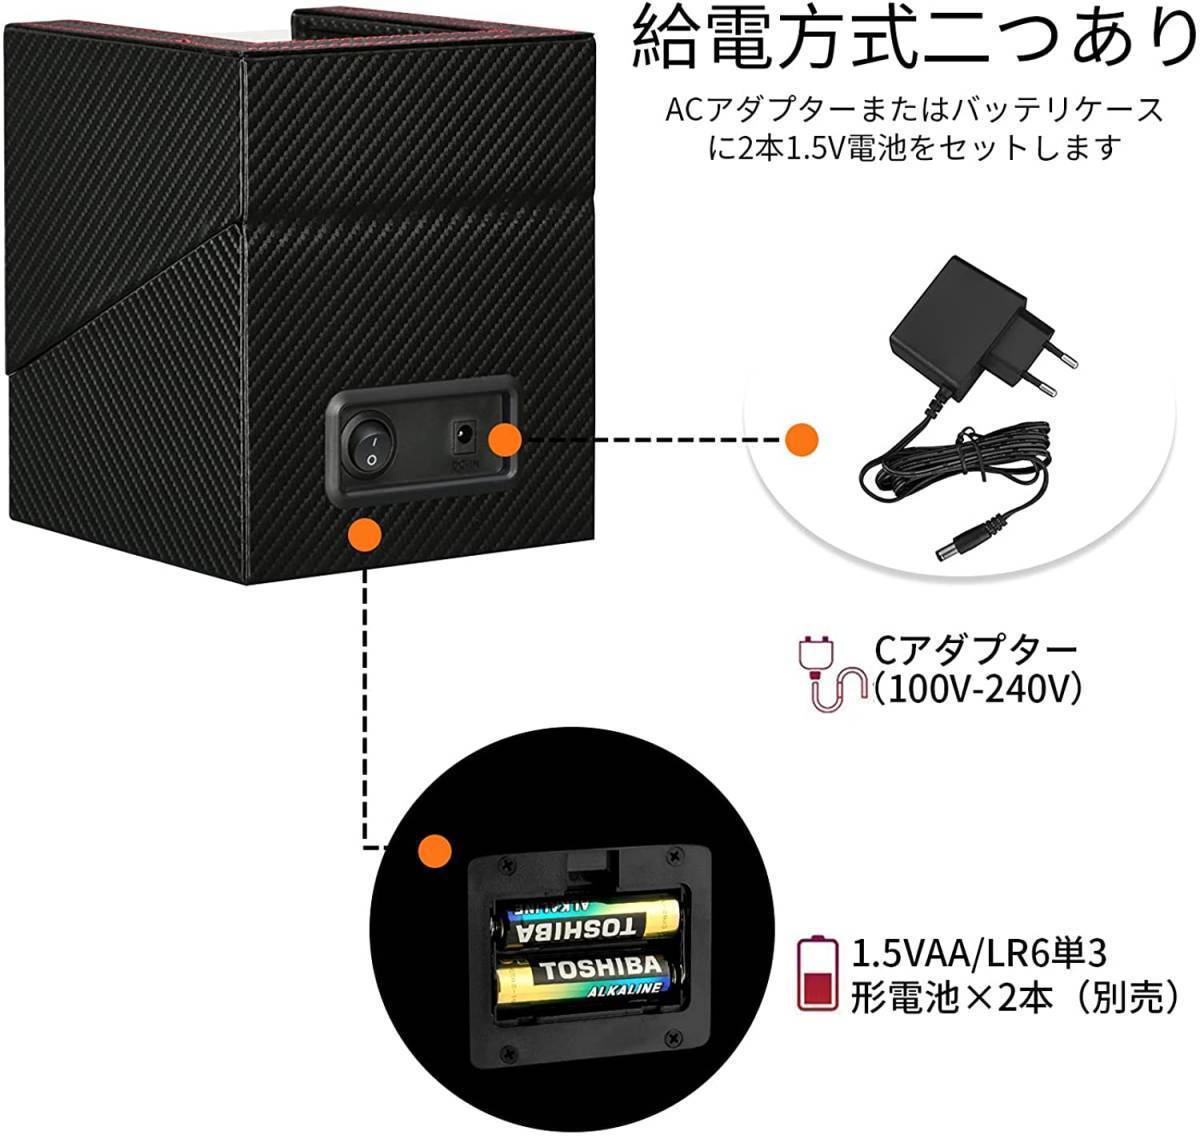 ワインディングマシーン 2本巻き 自動巻き時計ワインディングマシーン 日本製 マブチモーター   の画像5